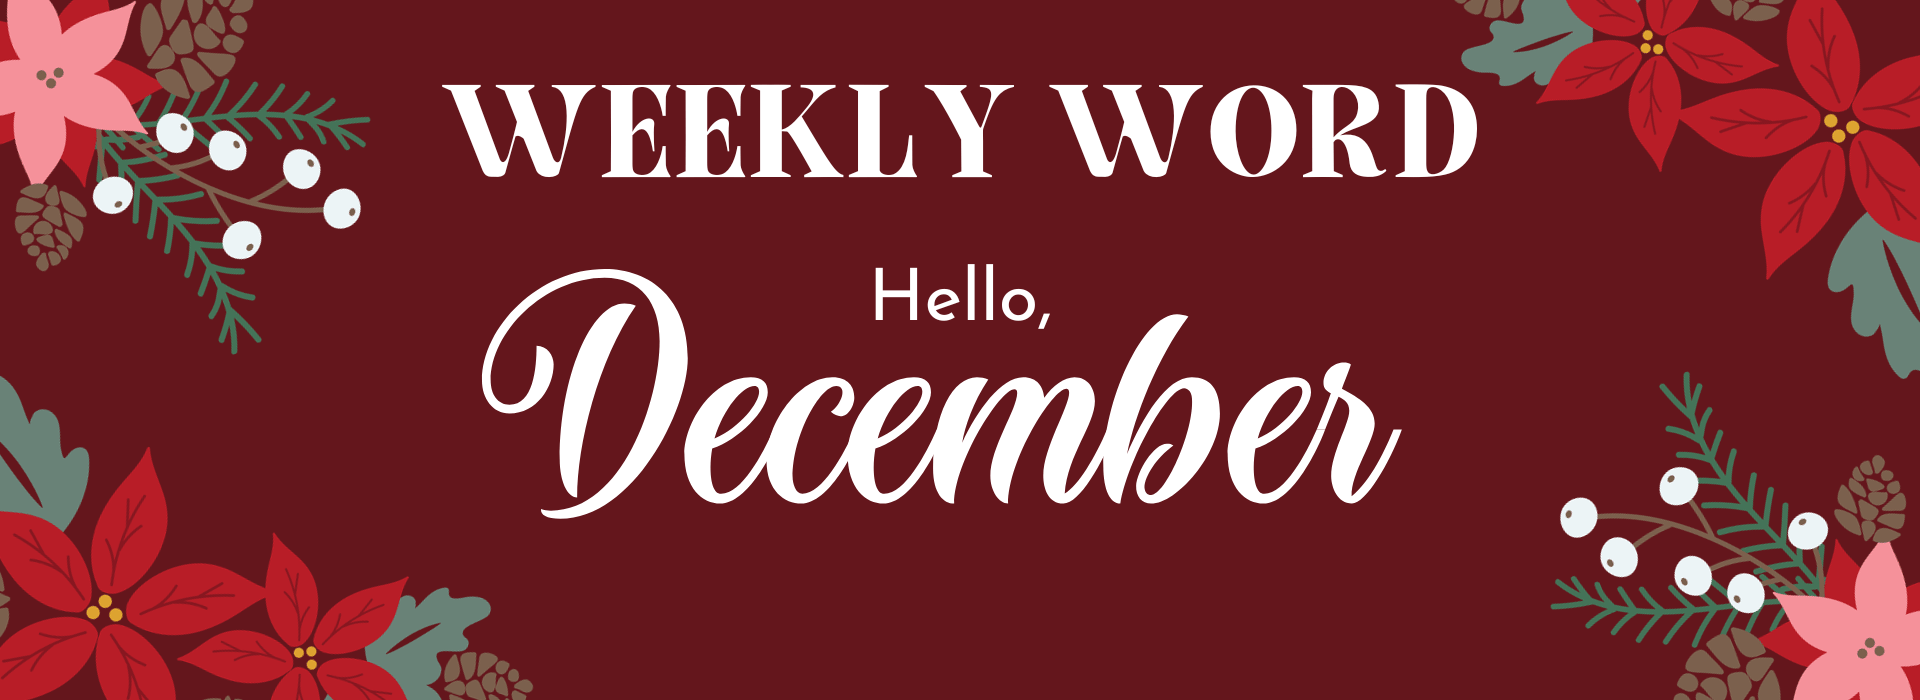 Dec 3 Weekly Word